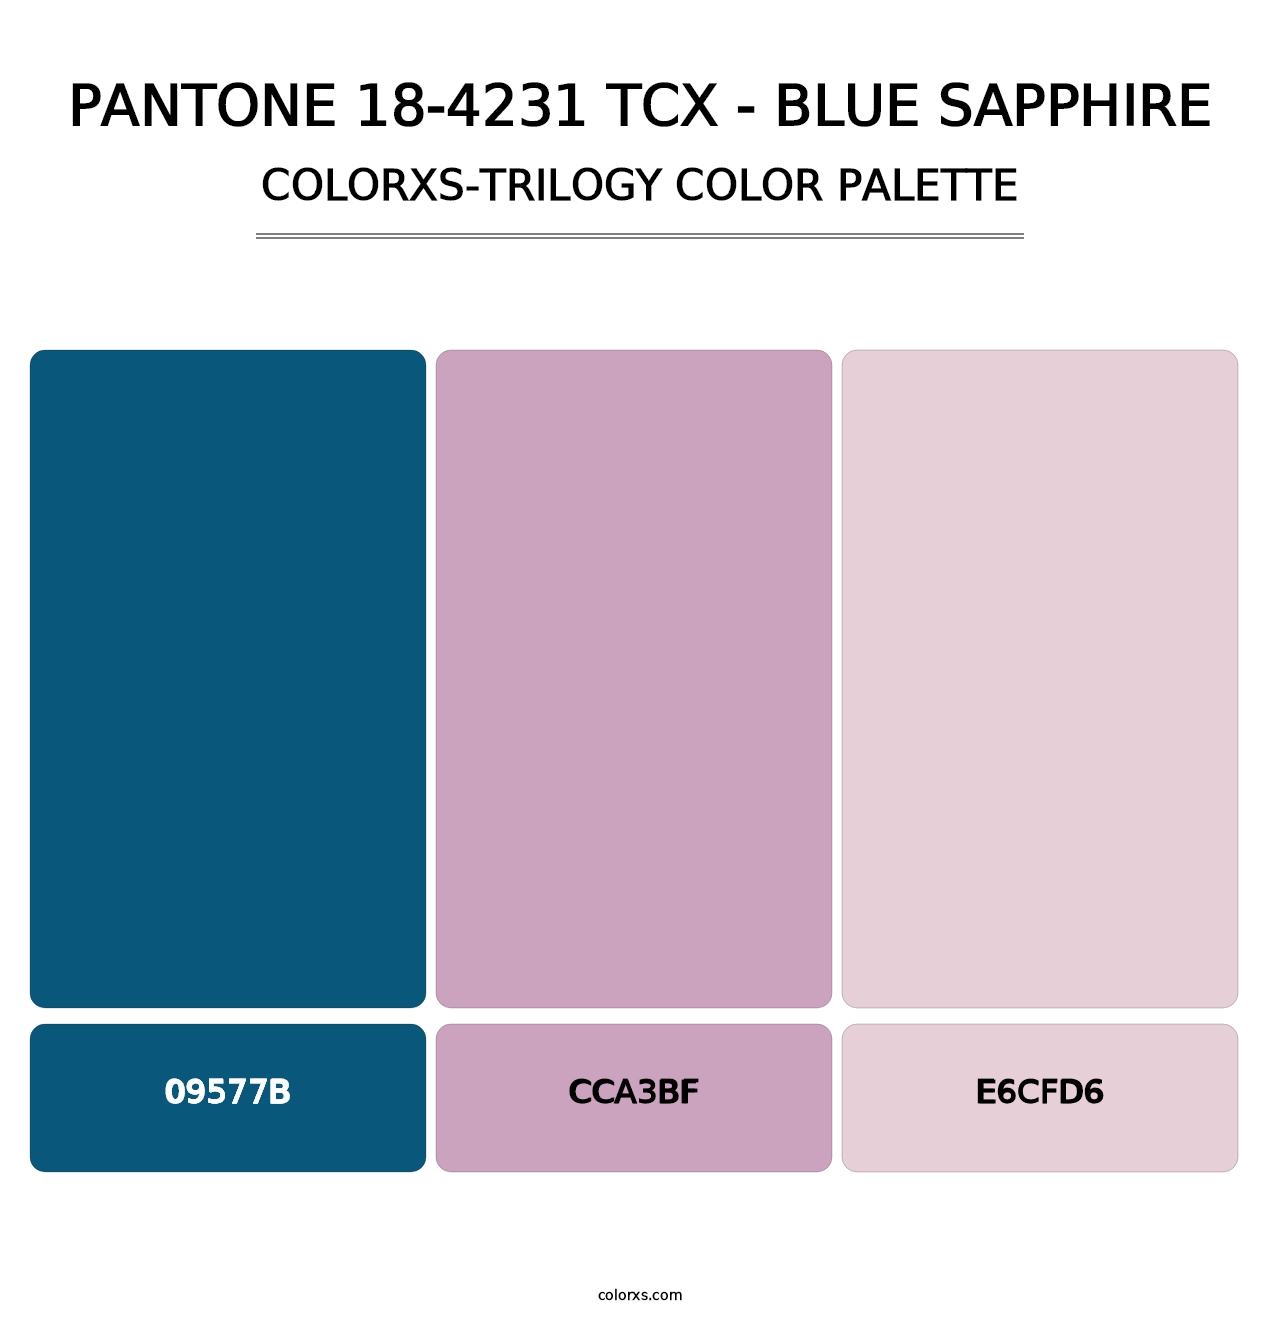 PANTONE 18-4231 TCX - Blue Sapphire - Colorxs Trilogy Palette